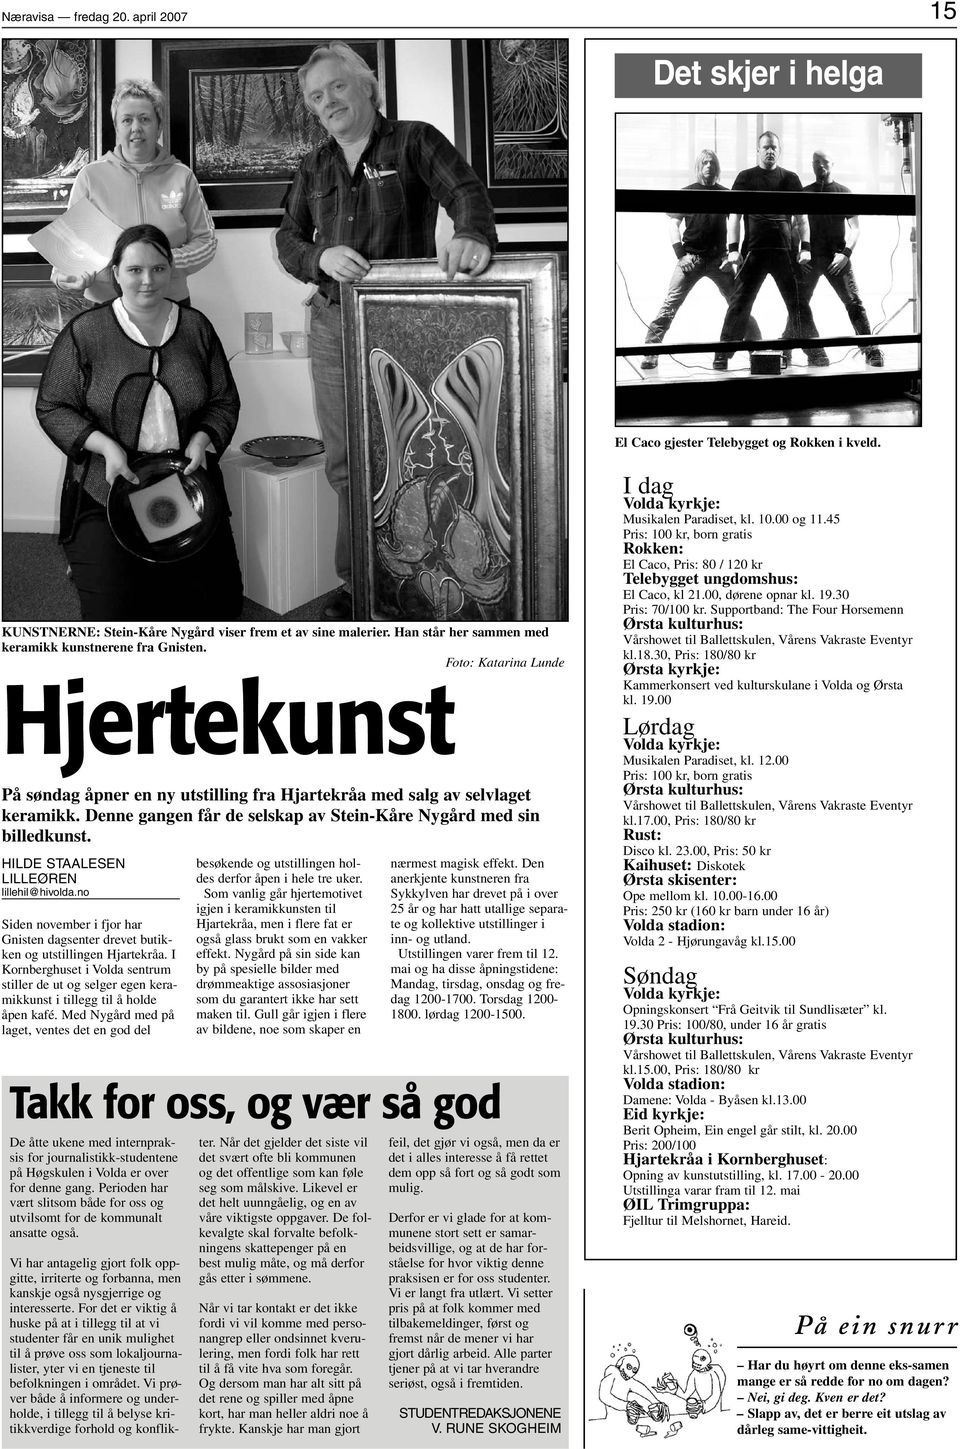 Denne gangen får de selskap av Stein-Kåre Nygård med sin billedkunst. HILDE STAALESEN LILLEØREN lillehil@hivolda.